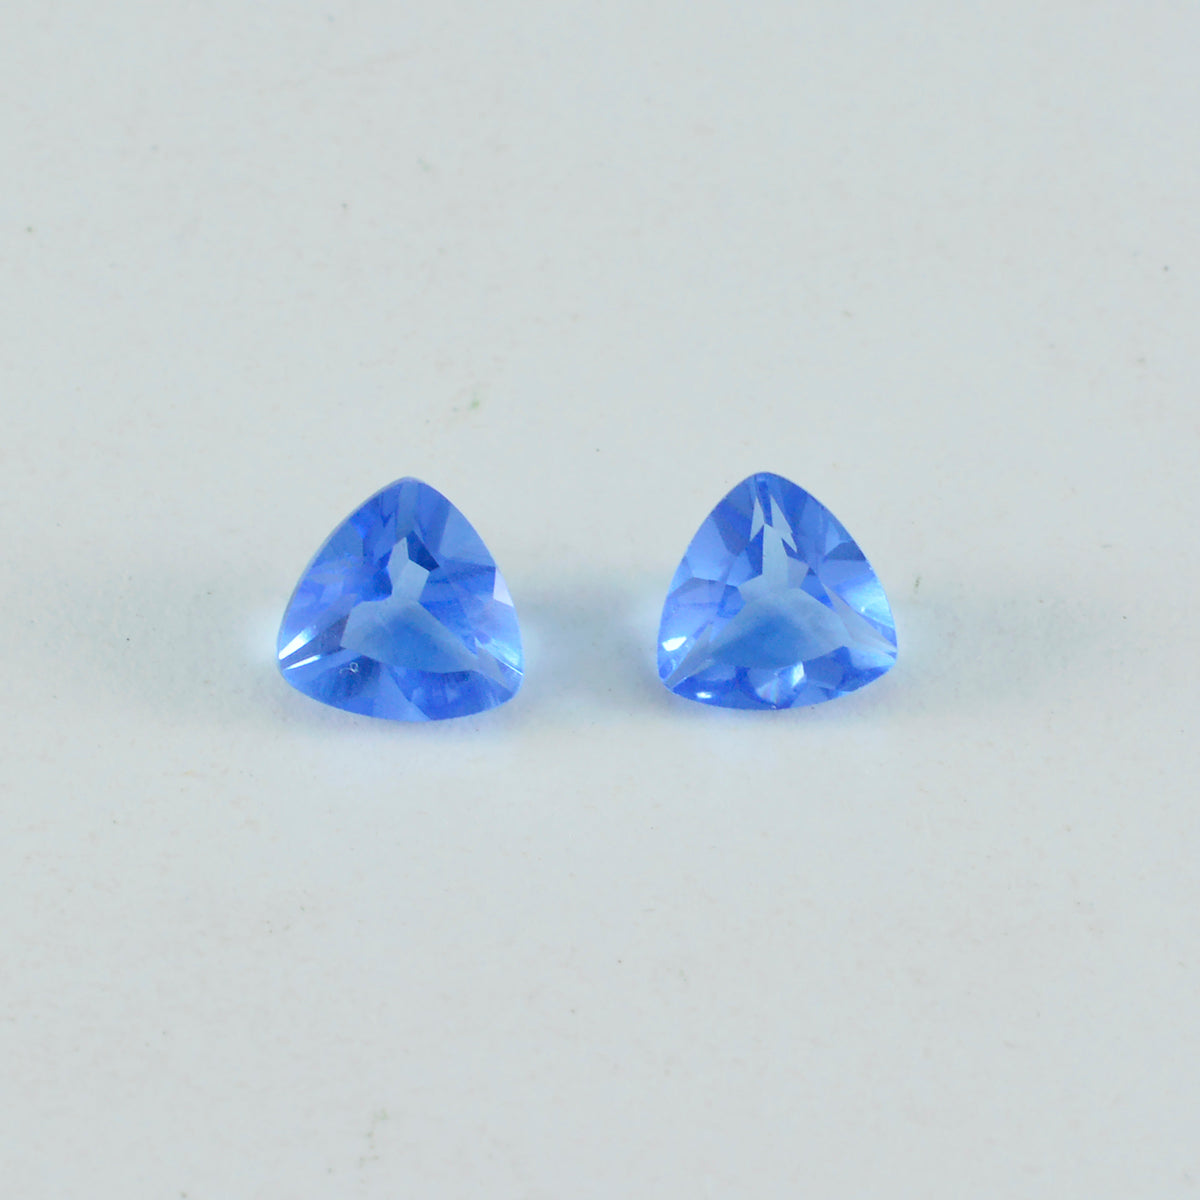 riyogems 1 шт. синий сапфир cz ограненный 11x11 мм форма триллиона камень потрясающего качества